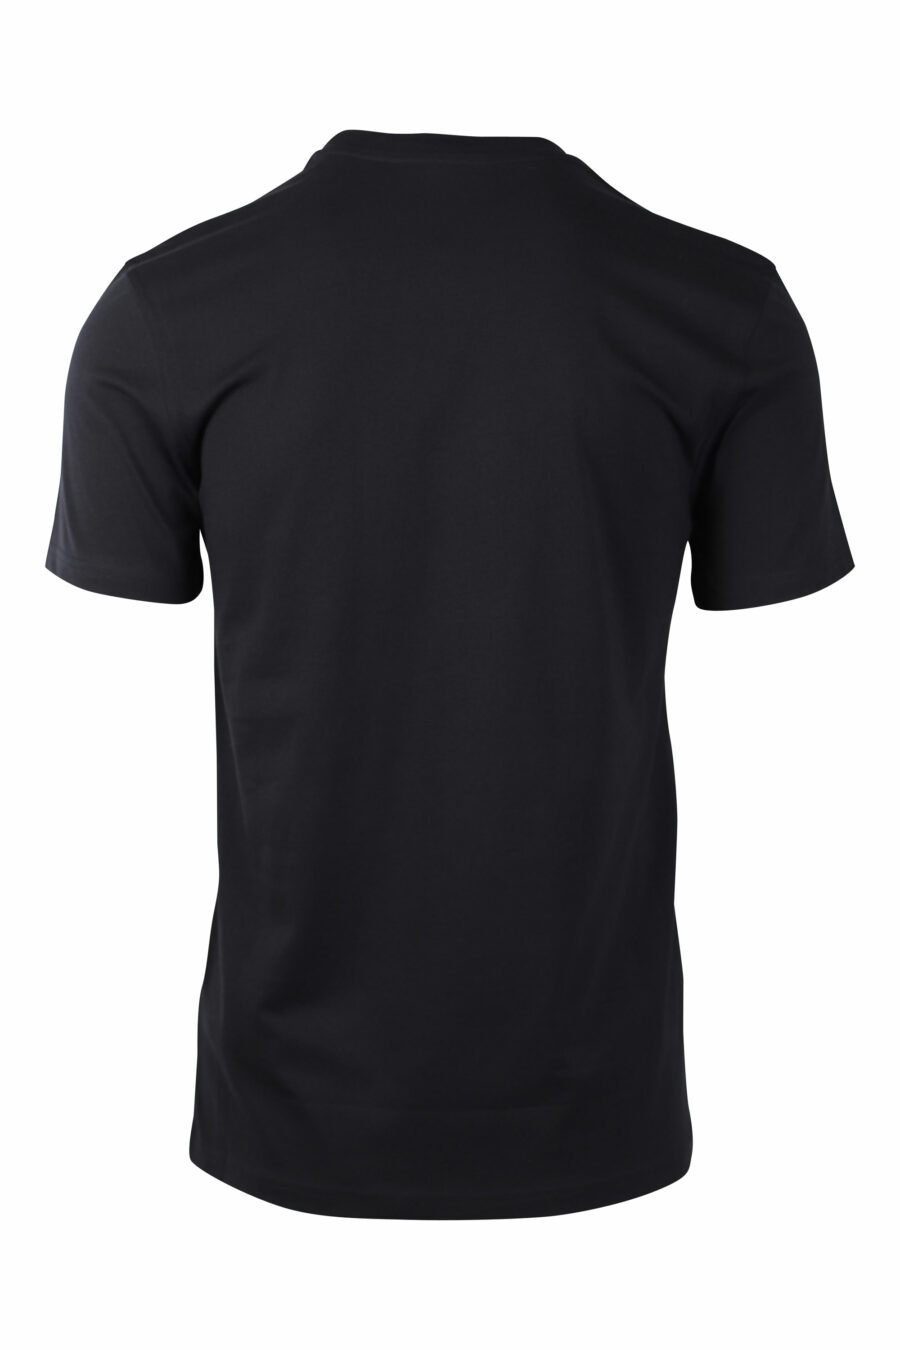 Camiseta negra con maxilogo plata - IMG 1468